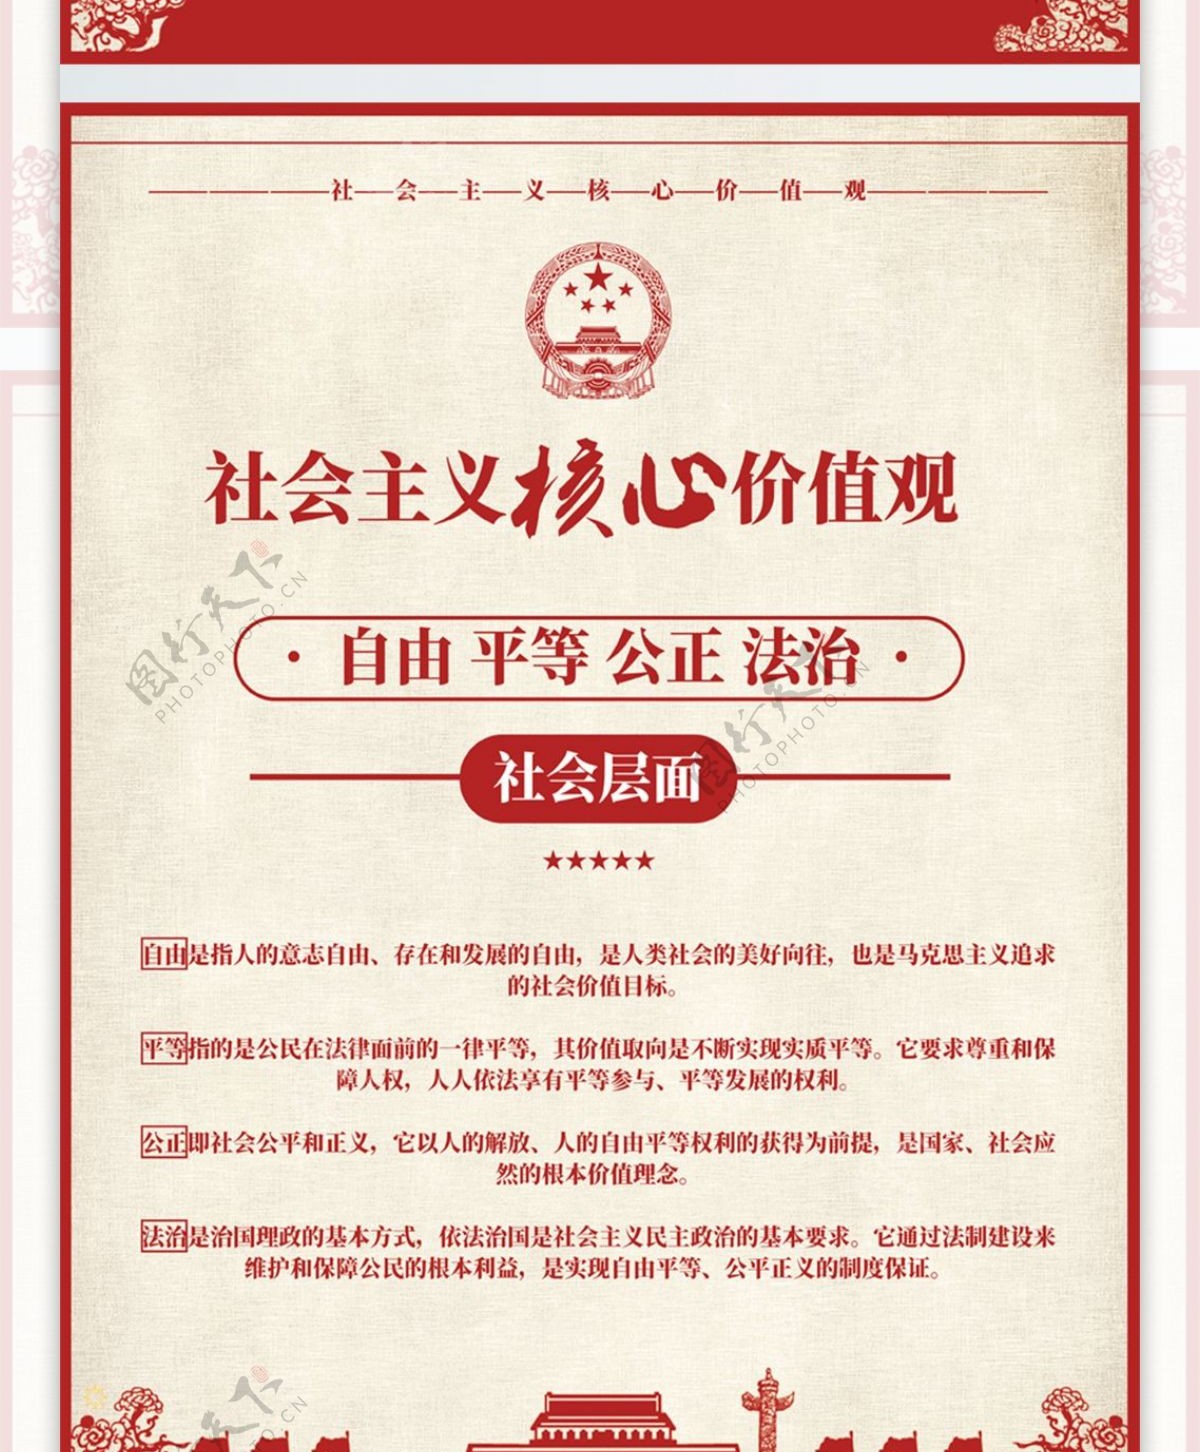 简约红色社会主义核心价值观系列海报